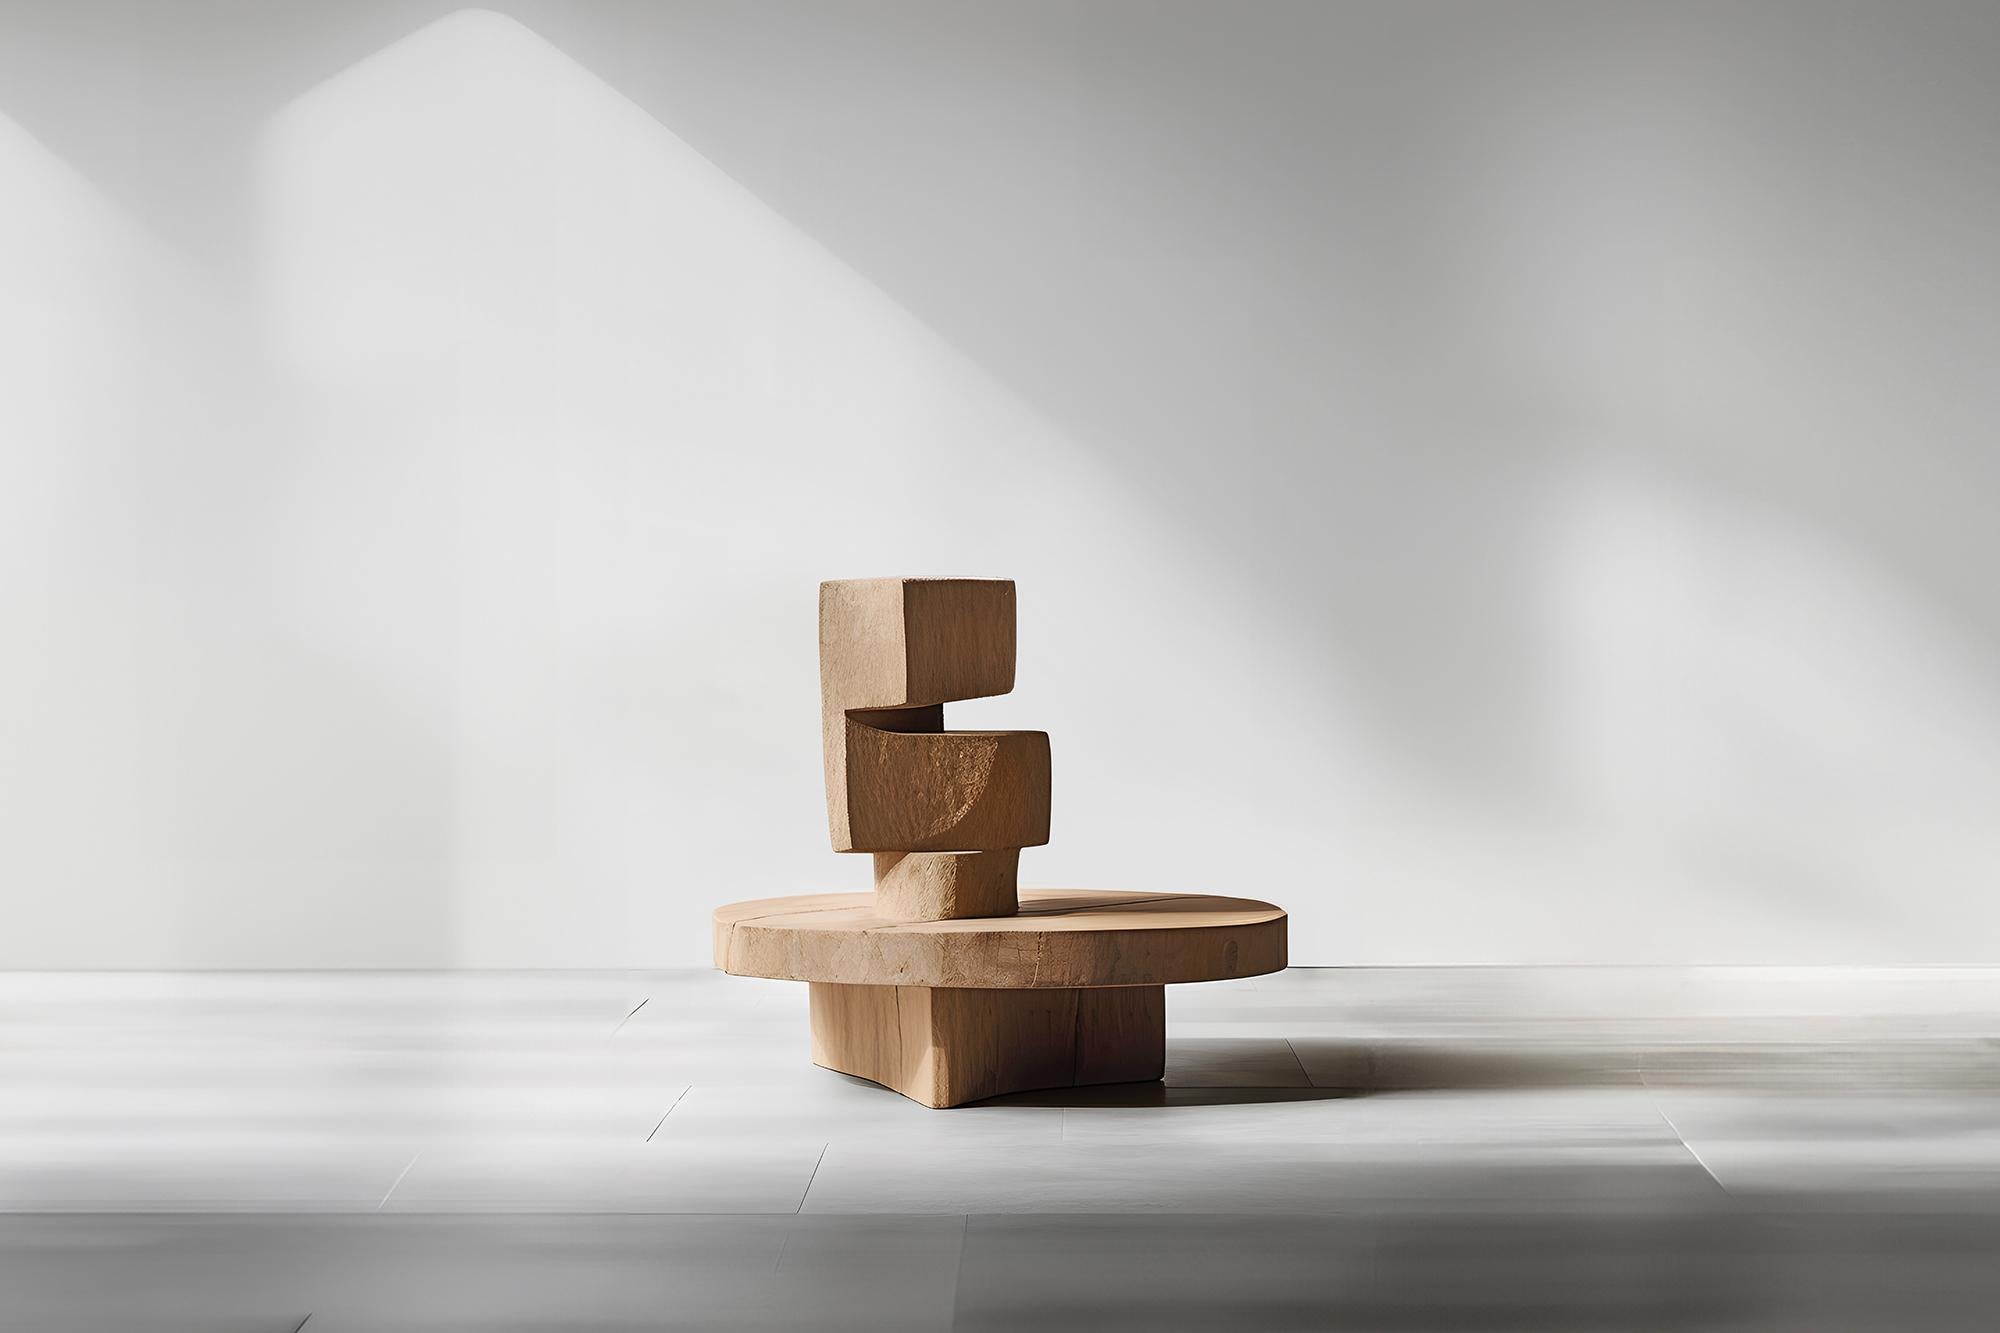 La force invisible de Joel Escalona n°45 : table basse en chêne agrémentée d'art


Table basse sculpturale en bois massif avec une finition naturelle à base d'eau ou carbonisée. En raison de la nature du processus de production, chaque pièce peut